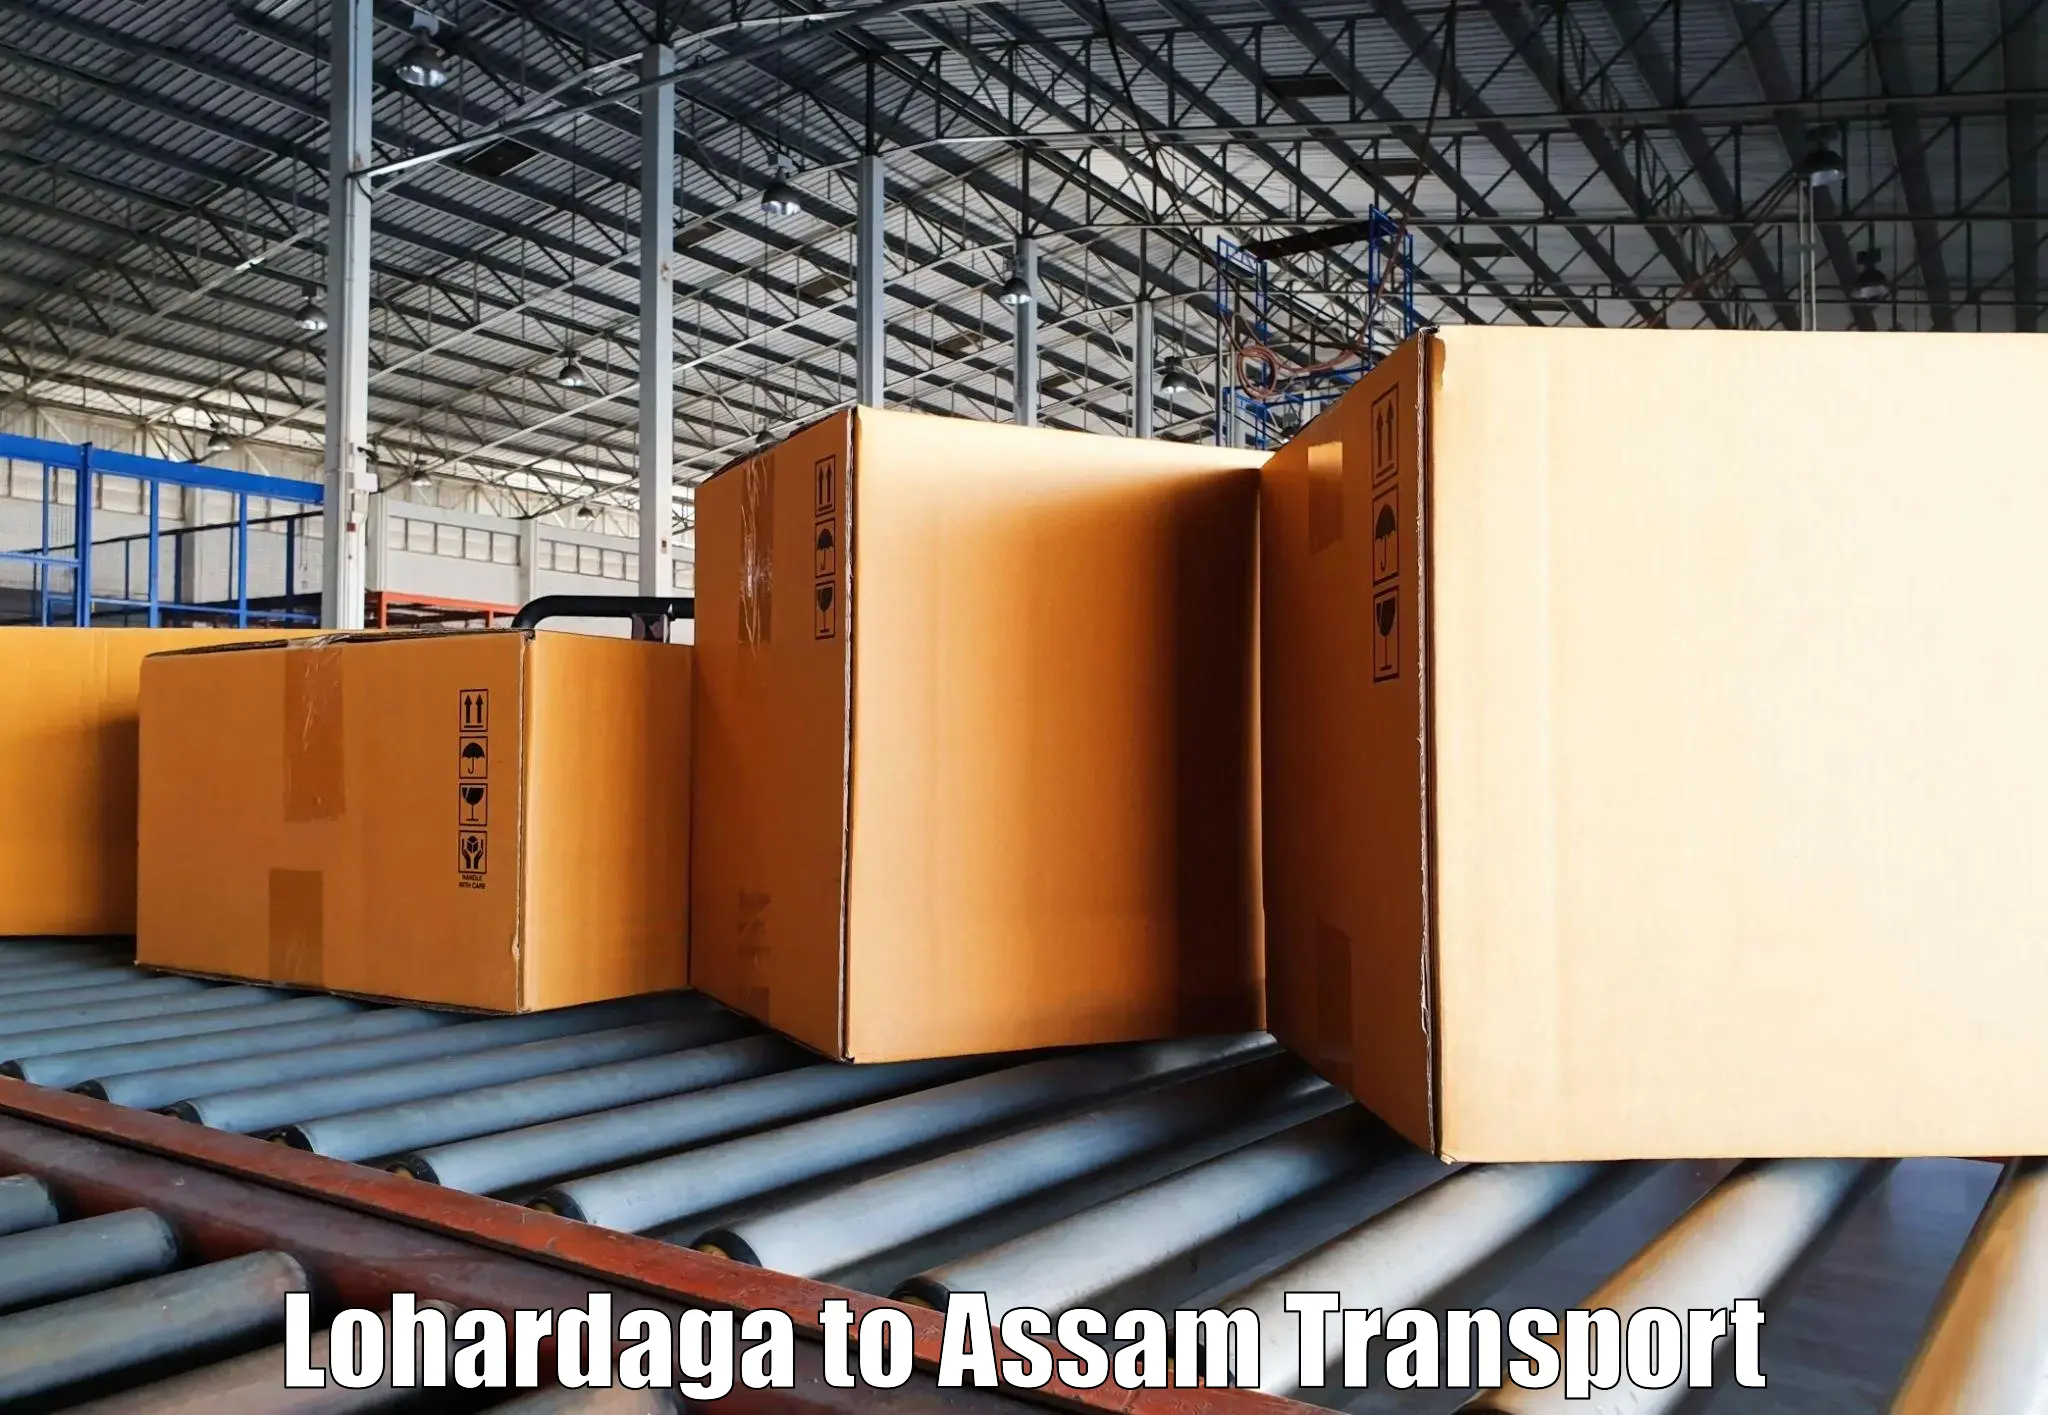 Two wheeler parcel service Lohardaga to Moranhat